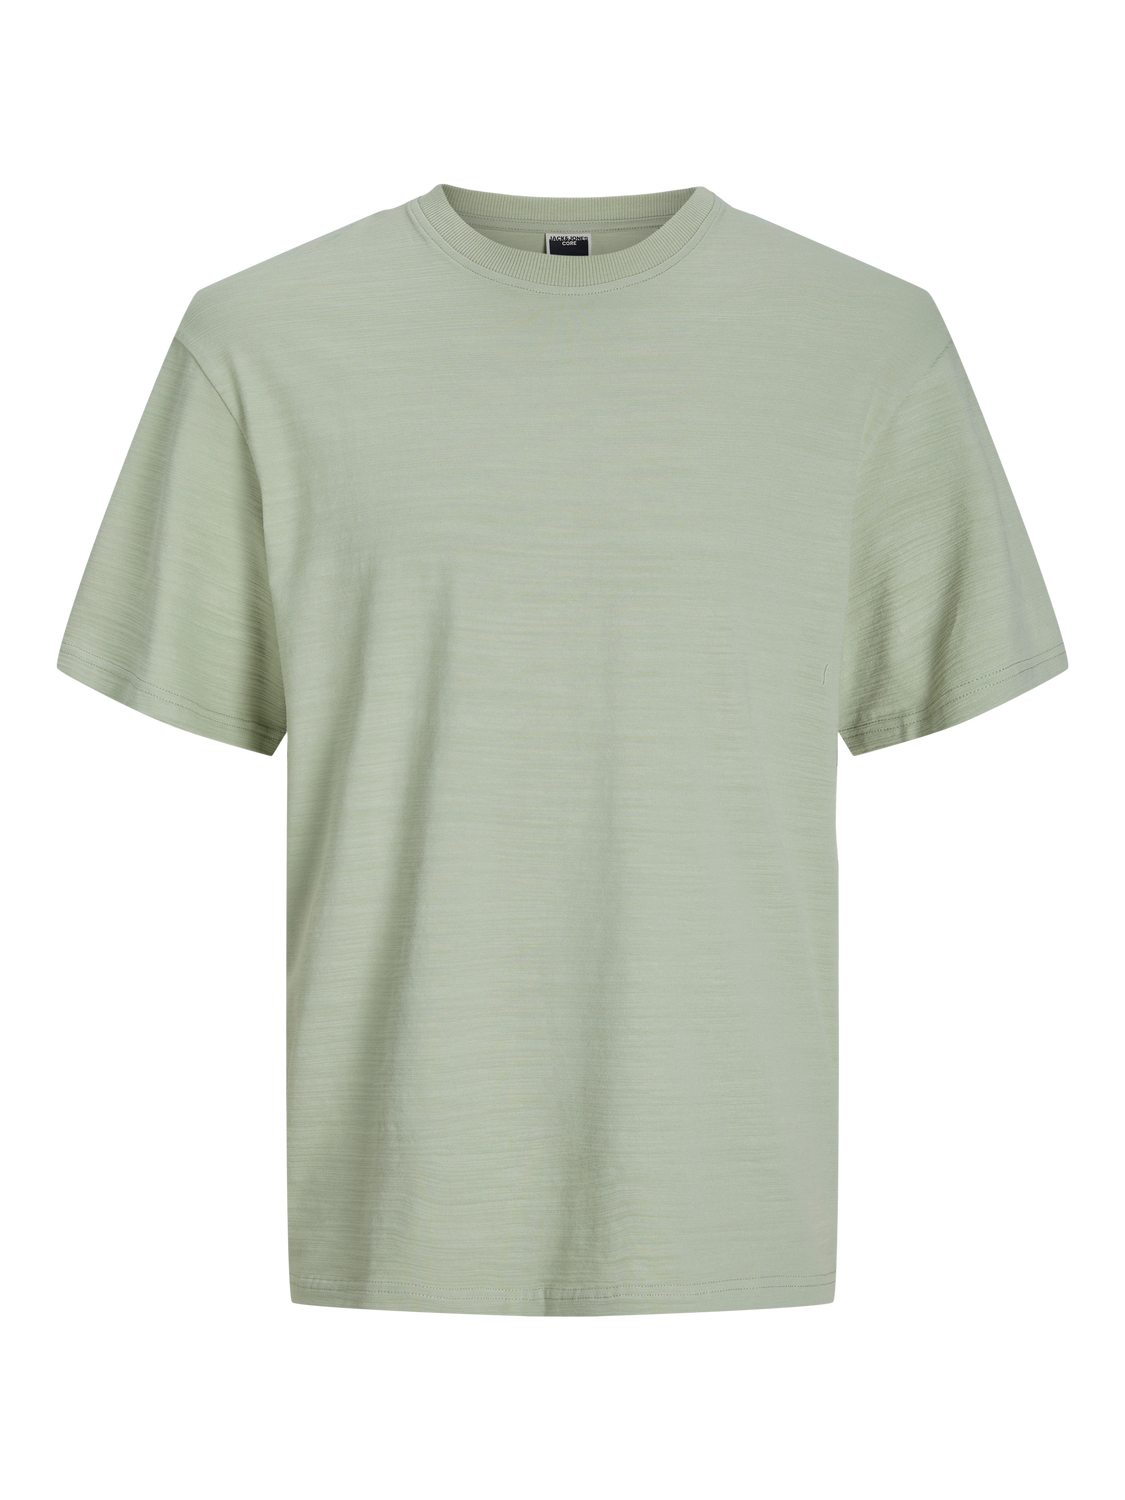 Jack & Jones Wide Fit Round Neck T-Shirt -Desert Sage - 12256533